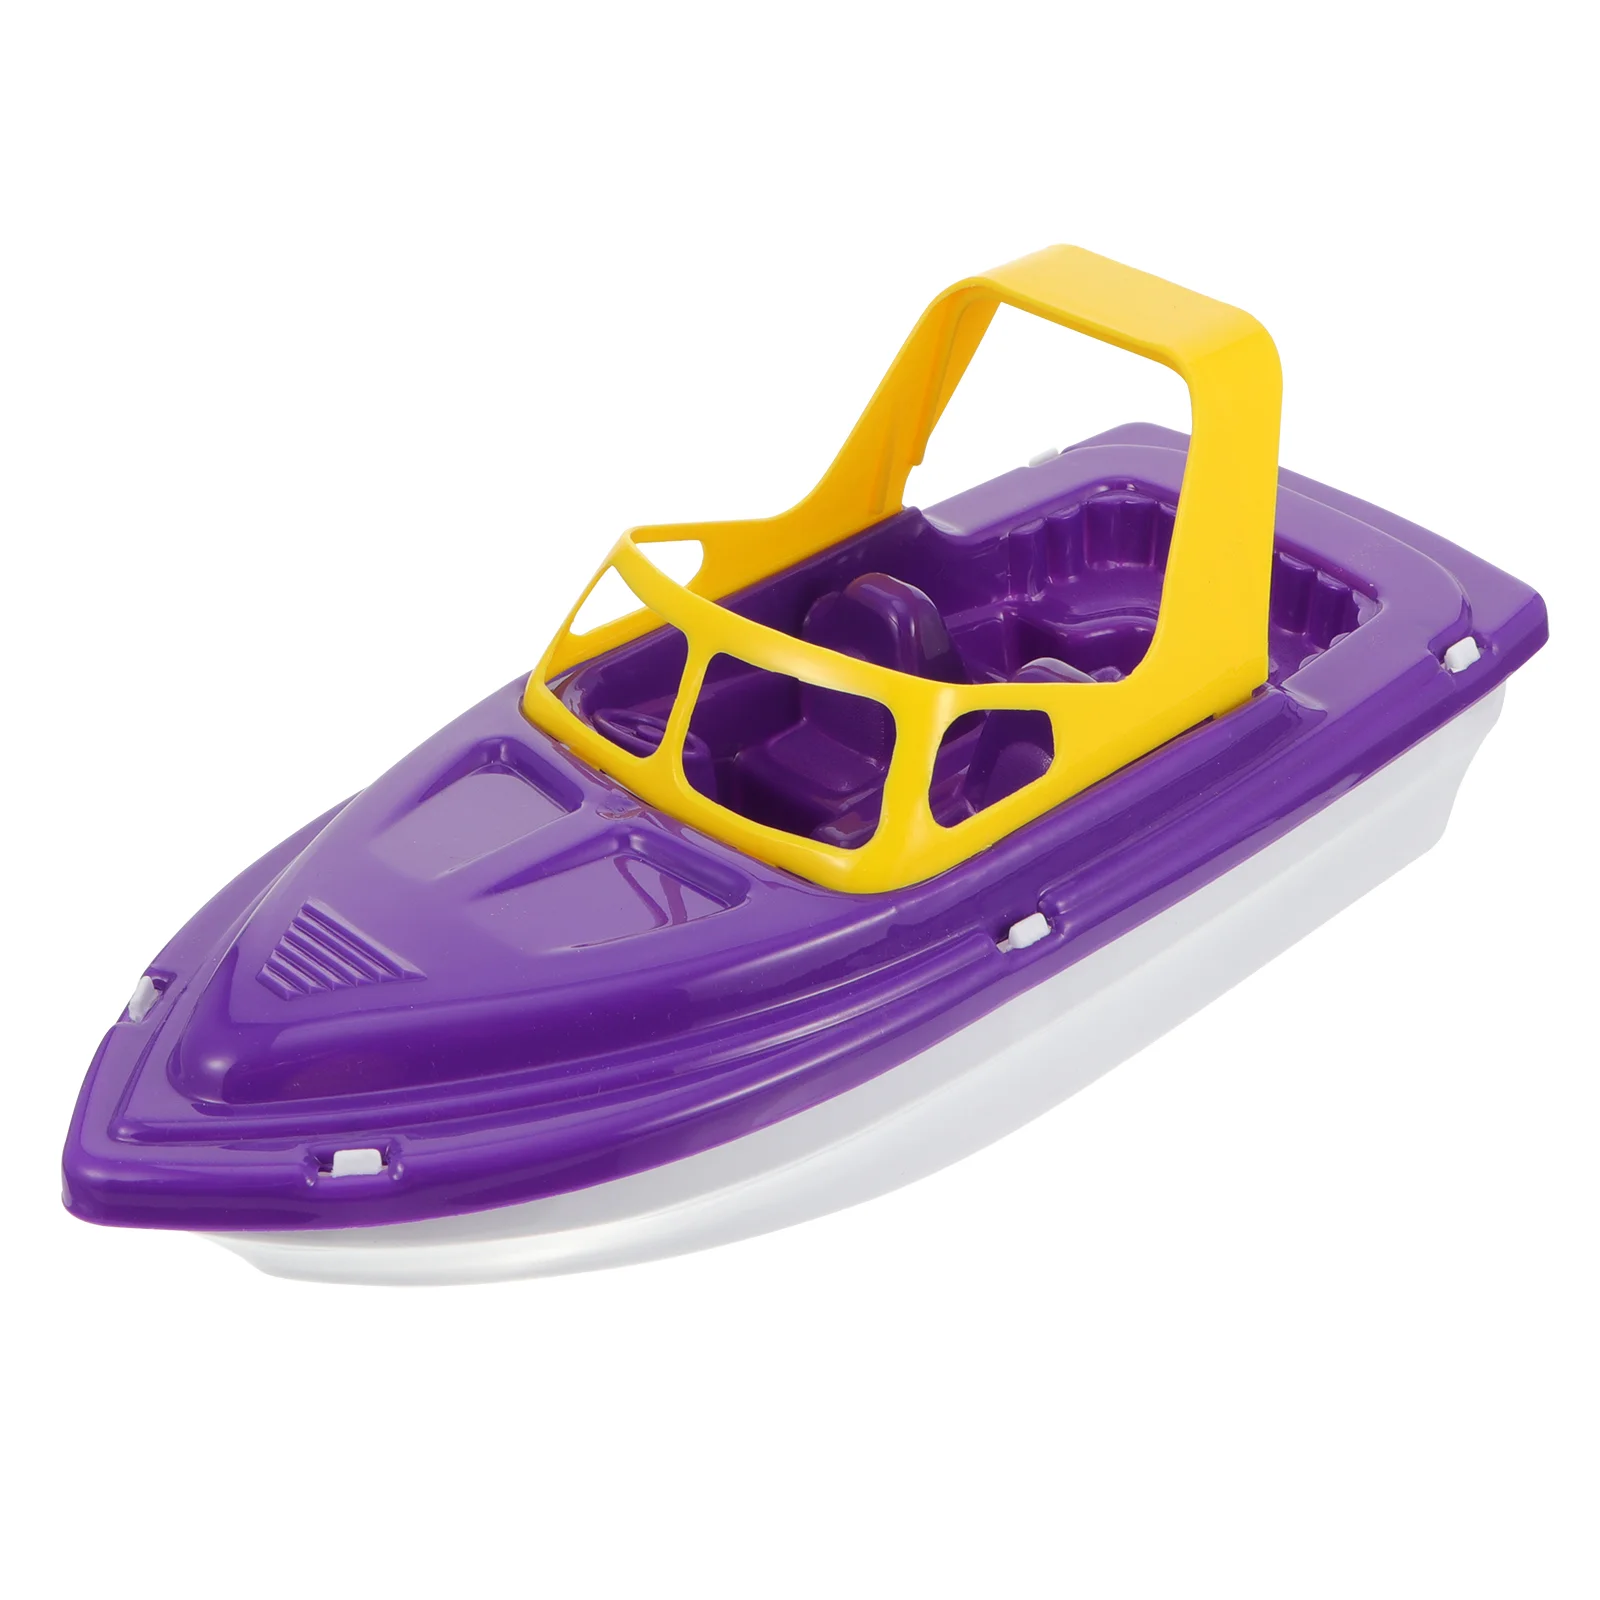 

Детские игрушки для ванной скоростная лодка для купания пляж детский душ парусные игрушки яхта фиолетовый пластик